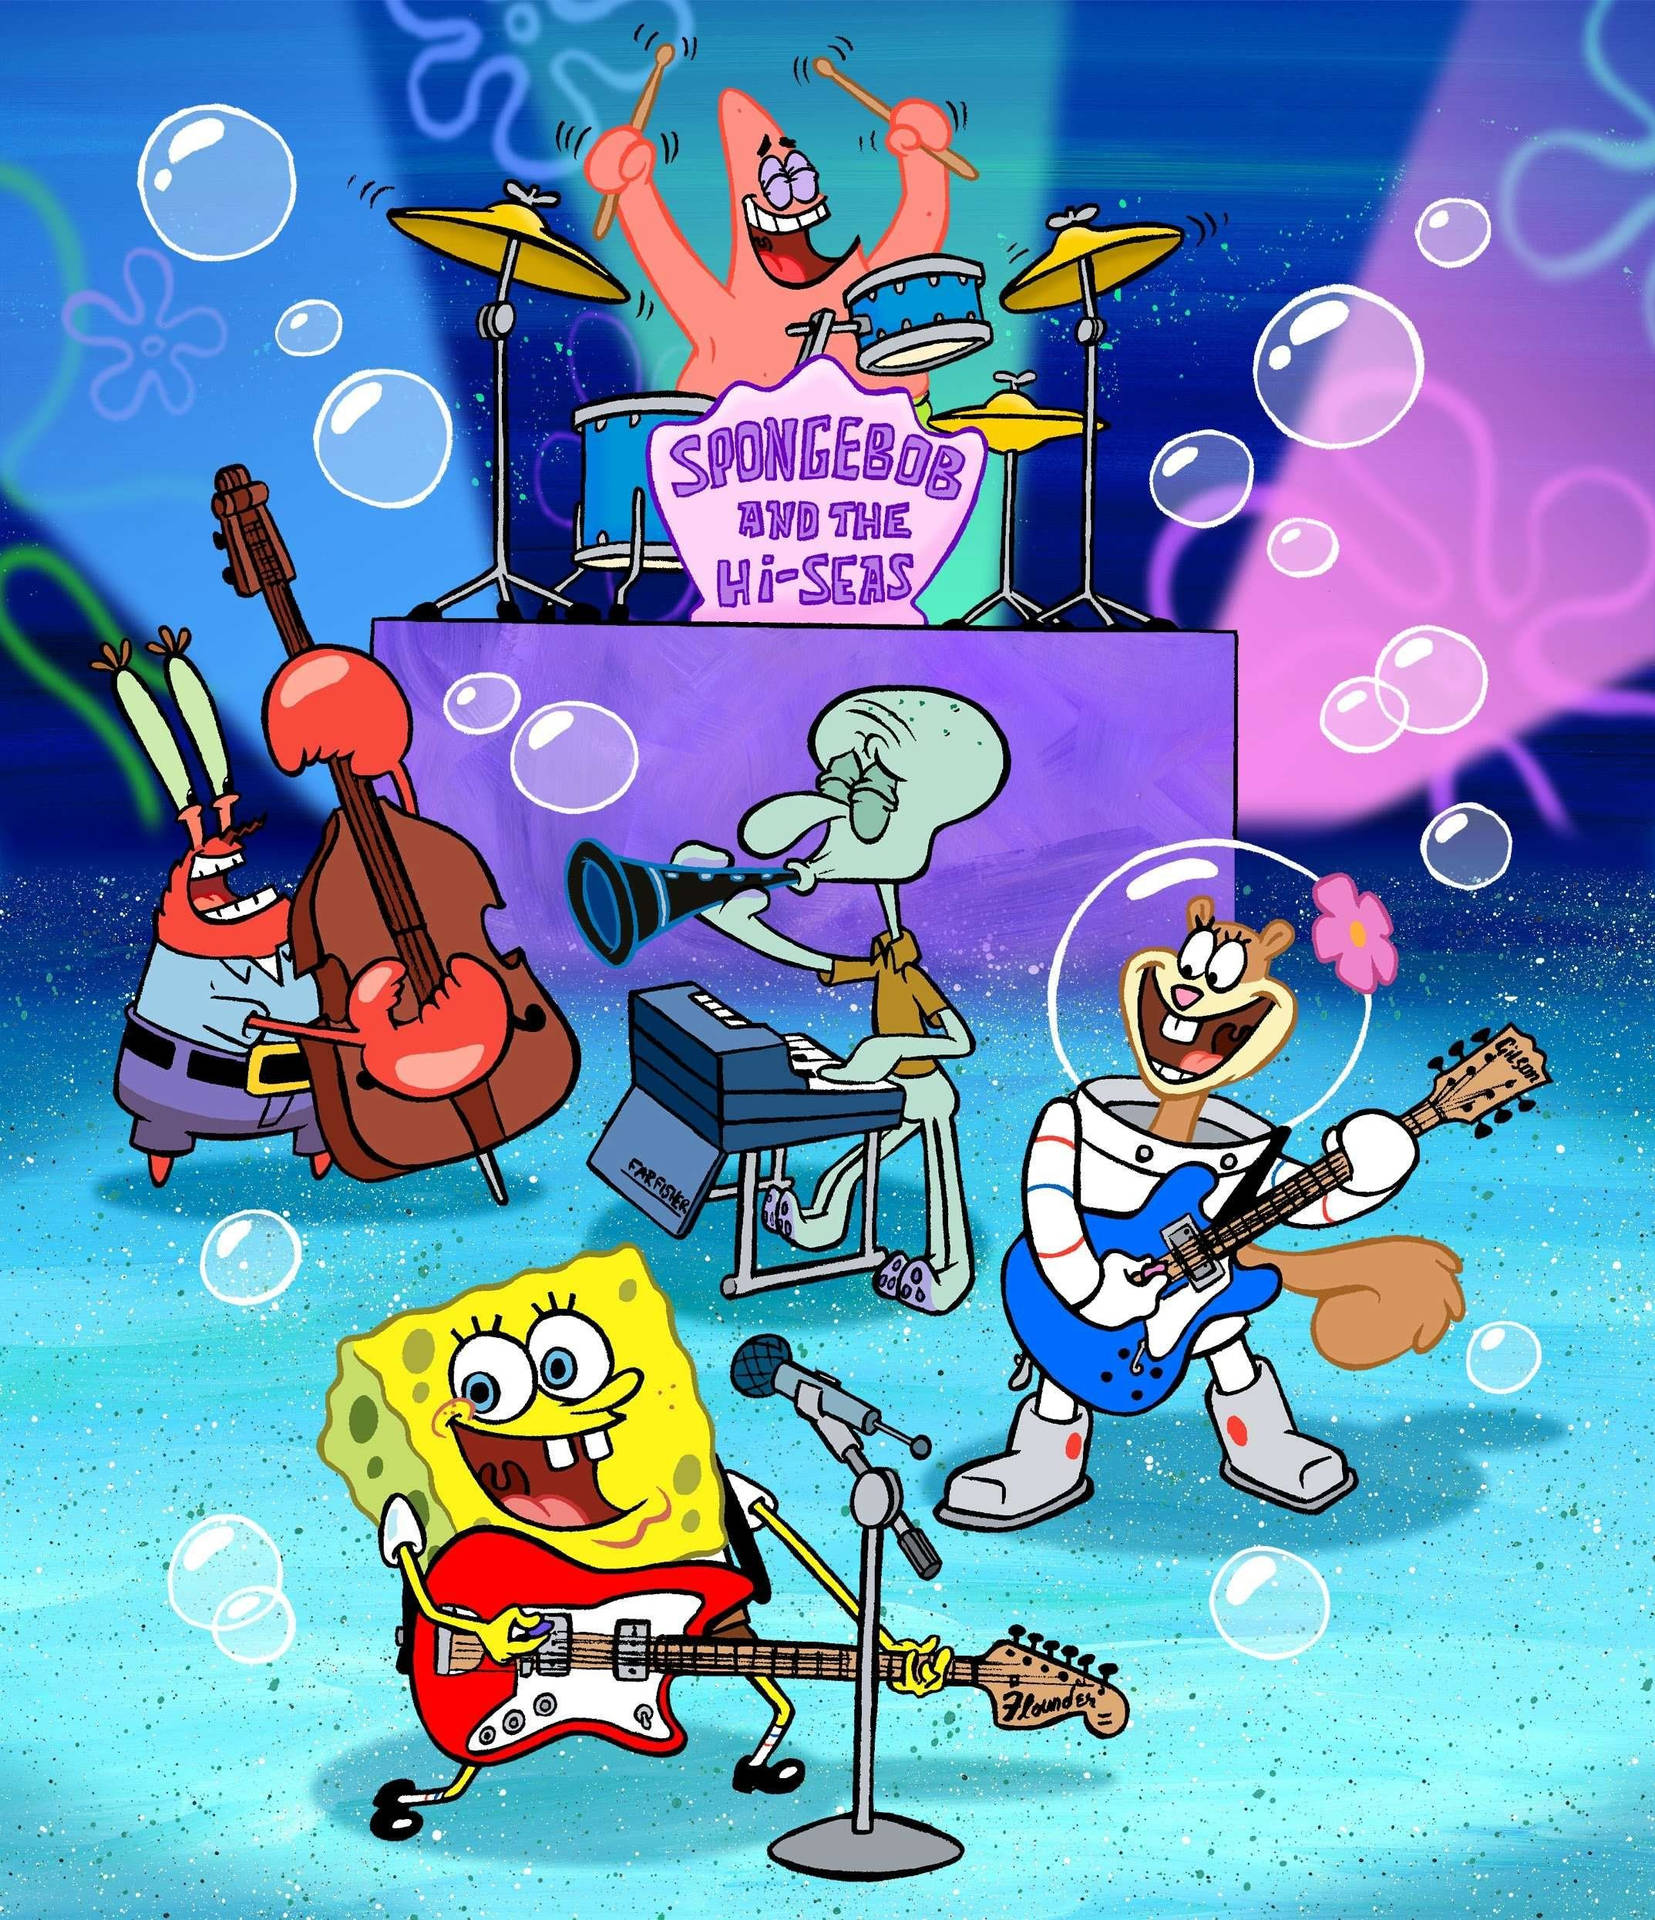 Cute Spongebob Hi-seas Concert